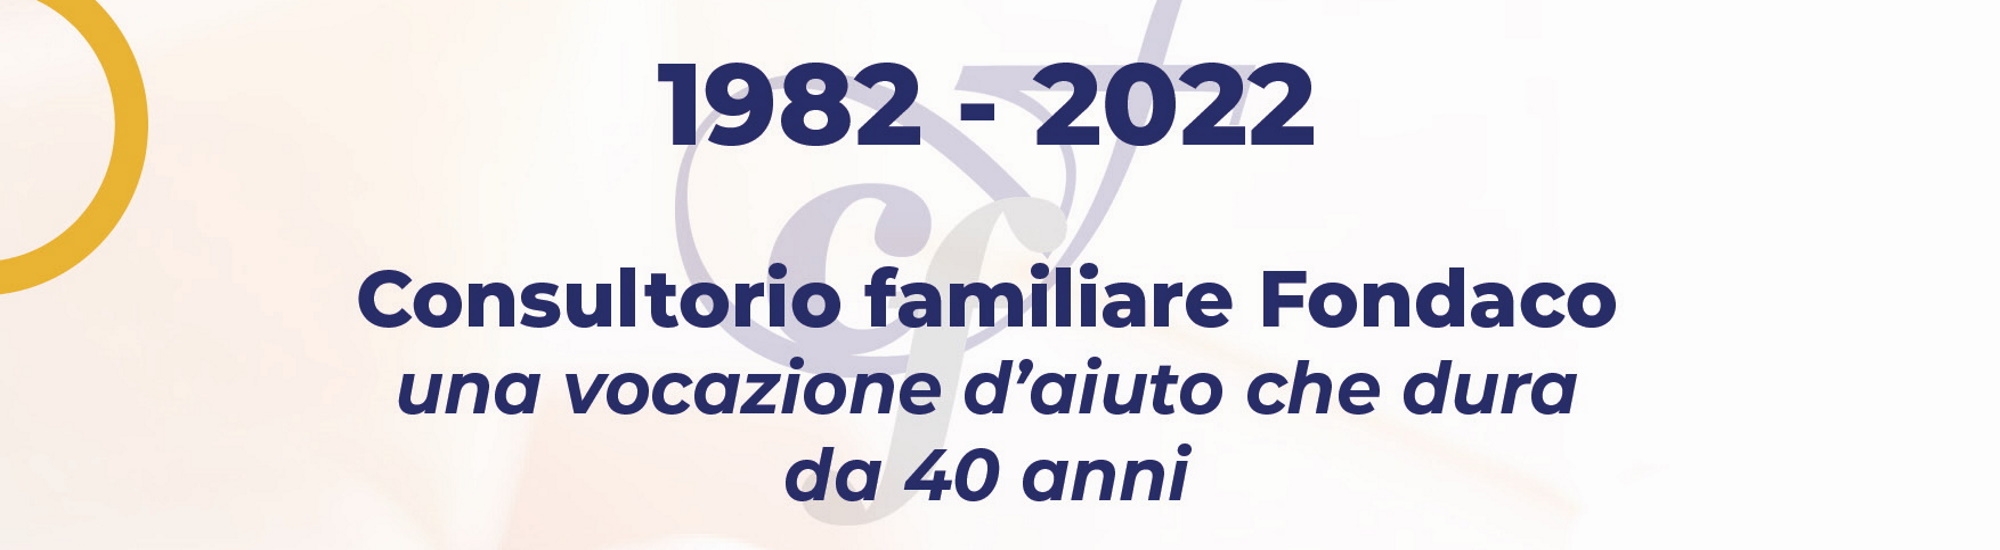 Immagine 1982-2022 Consultorio familiare Fondaco